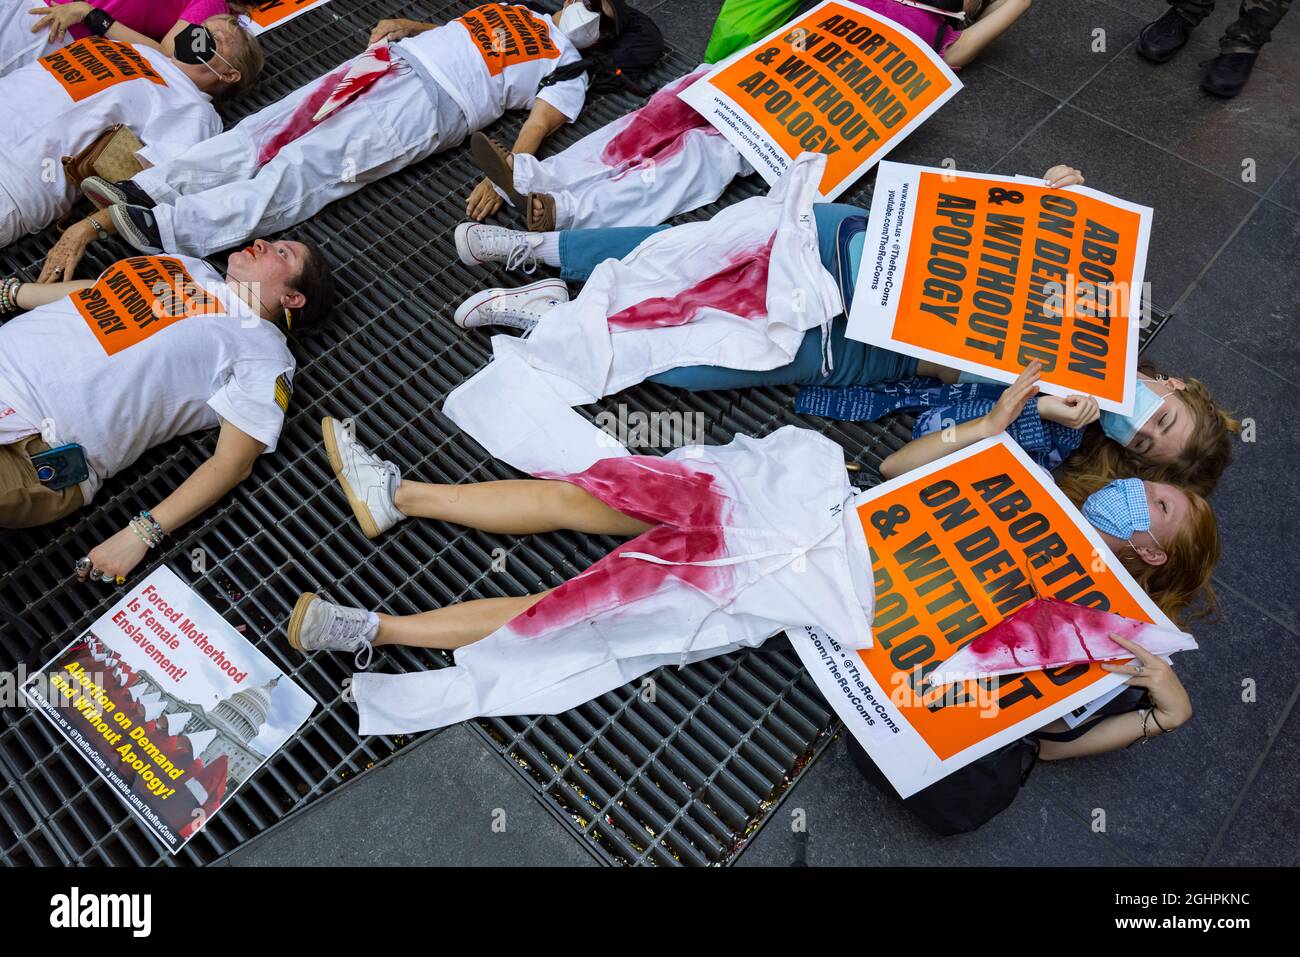 Los manifestantes contra Texas prohíben las leyes de aborto, que se reúnen y se manifiestan en Times Square el sábado por la tarde el 4 de septiembre de 2021 en la ciudad de Nueva York, NY Foto de stock